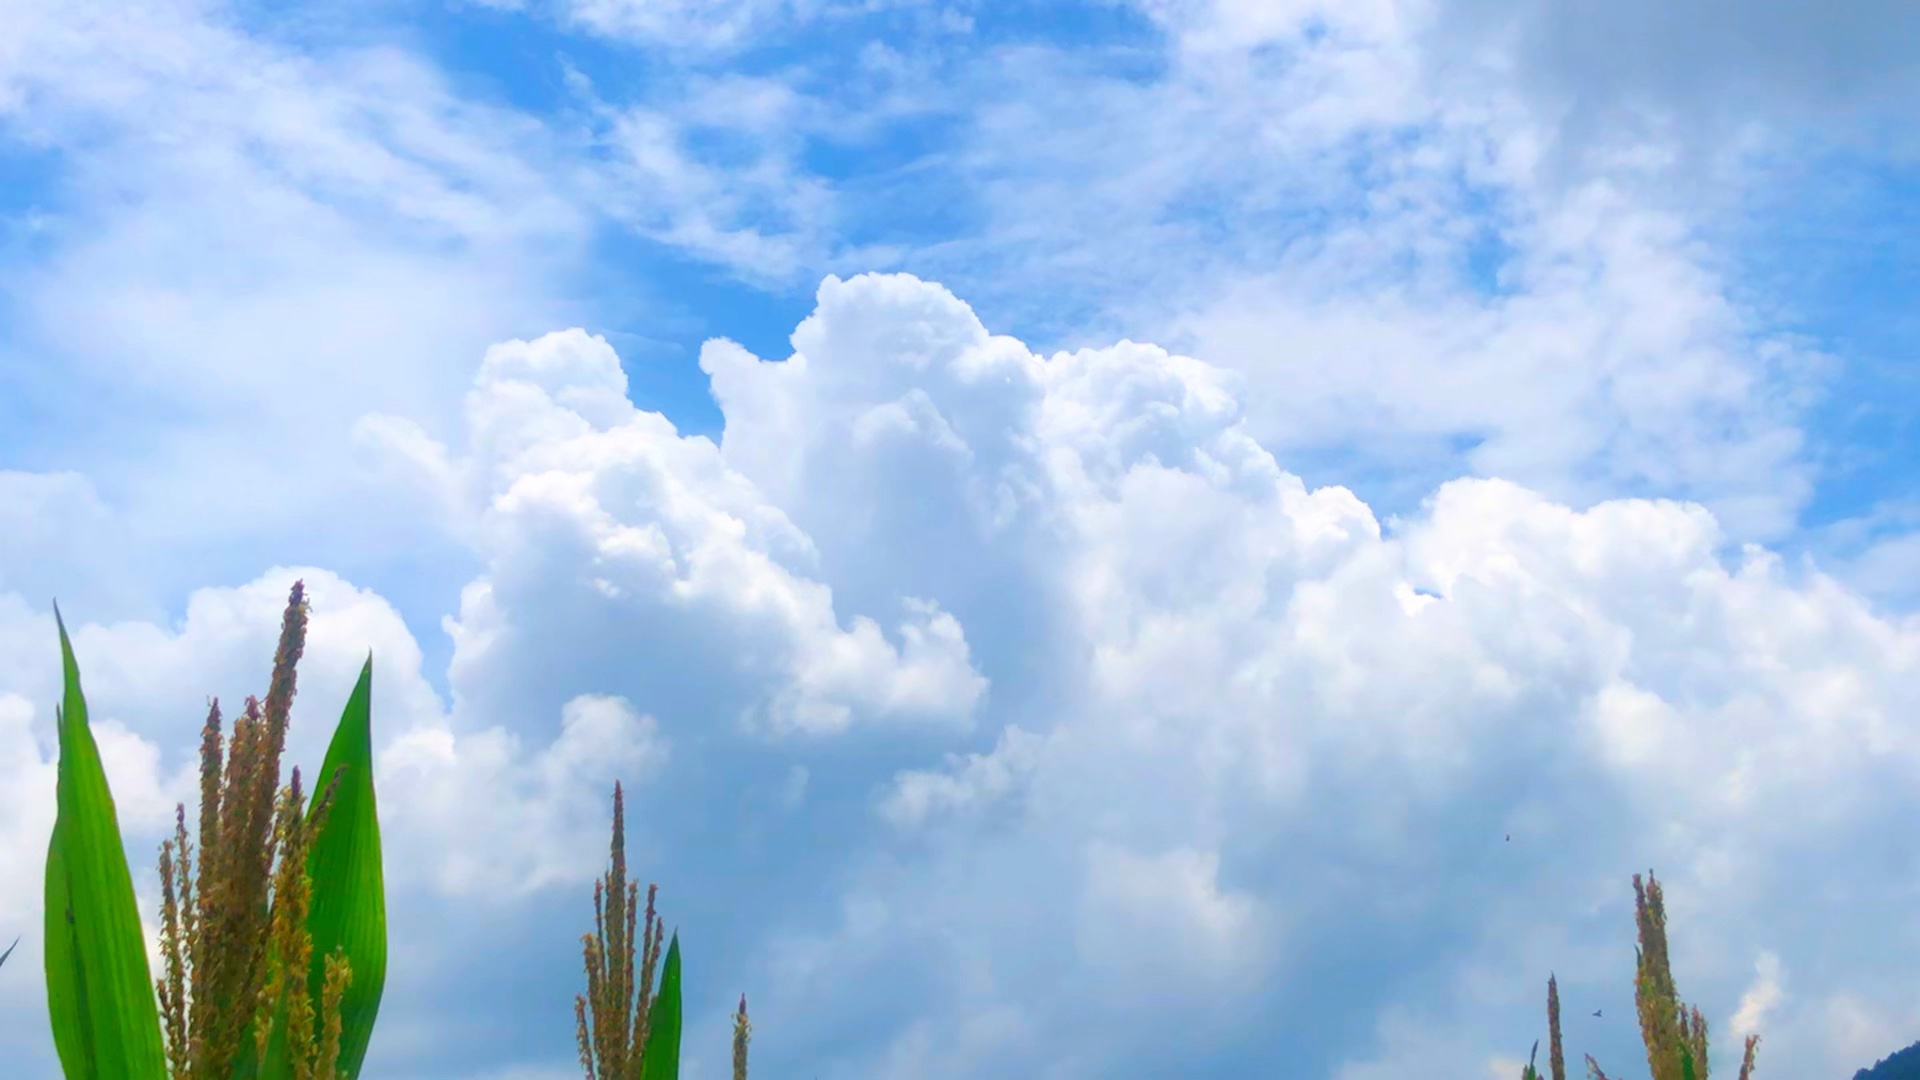 又到了拍云的季节了 夏日治愈系天空云朵7815风景拍摄 